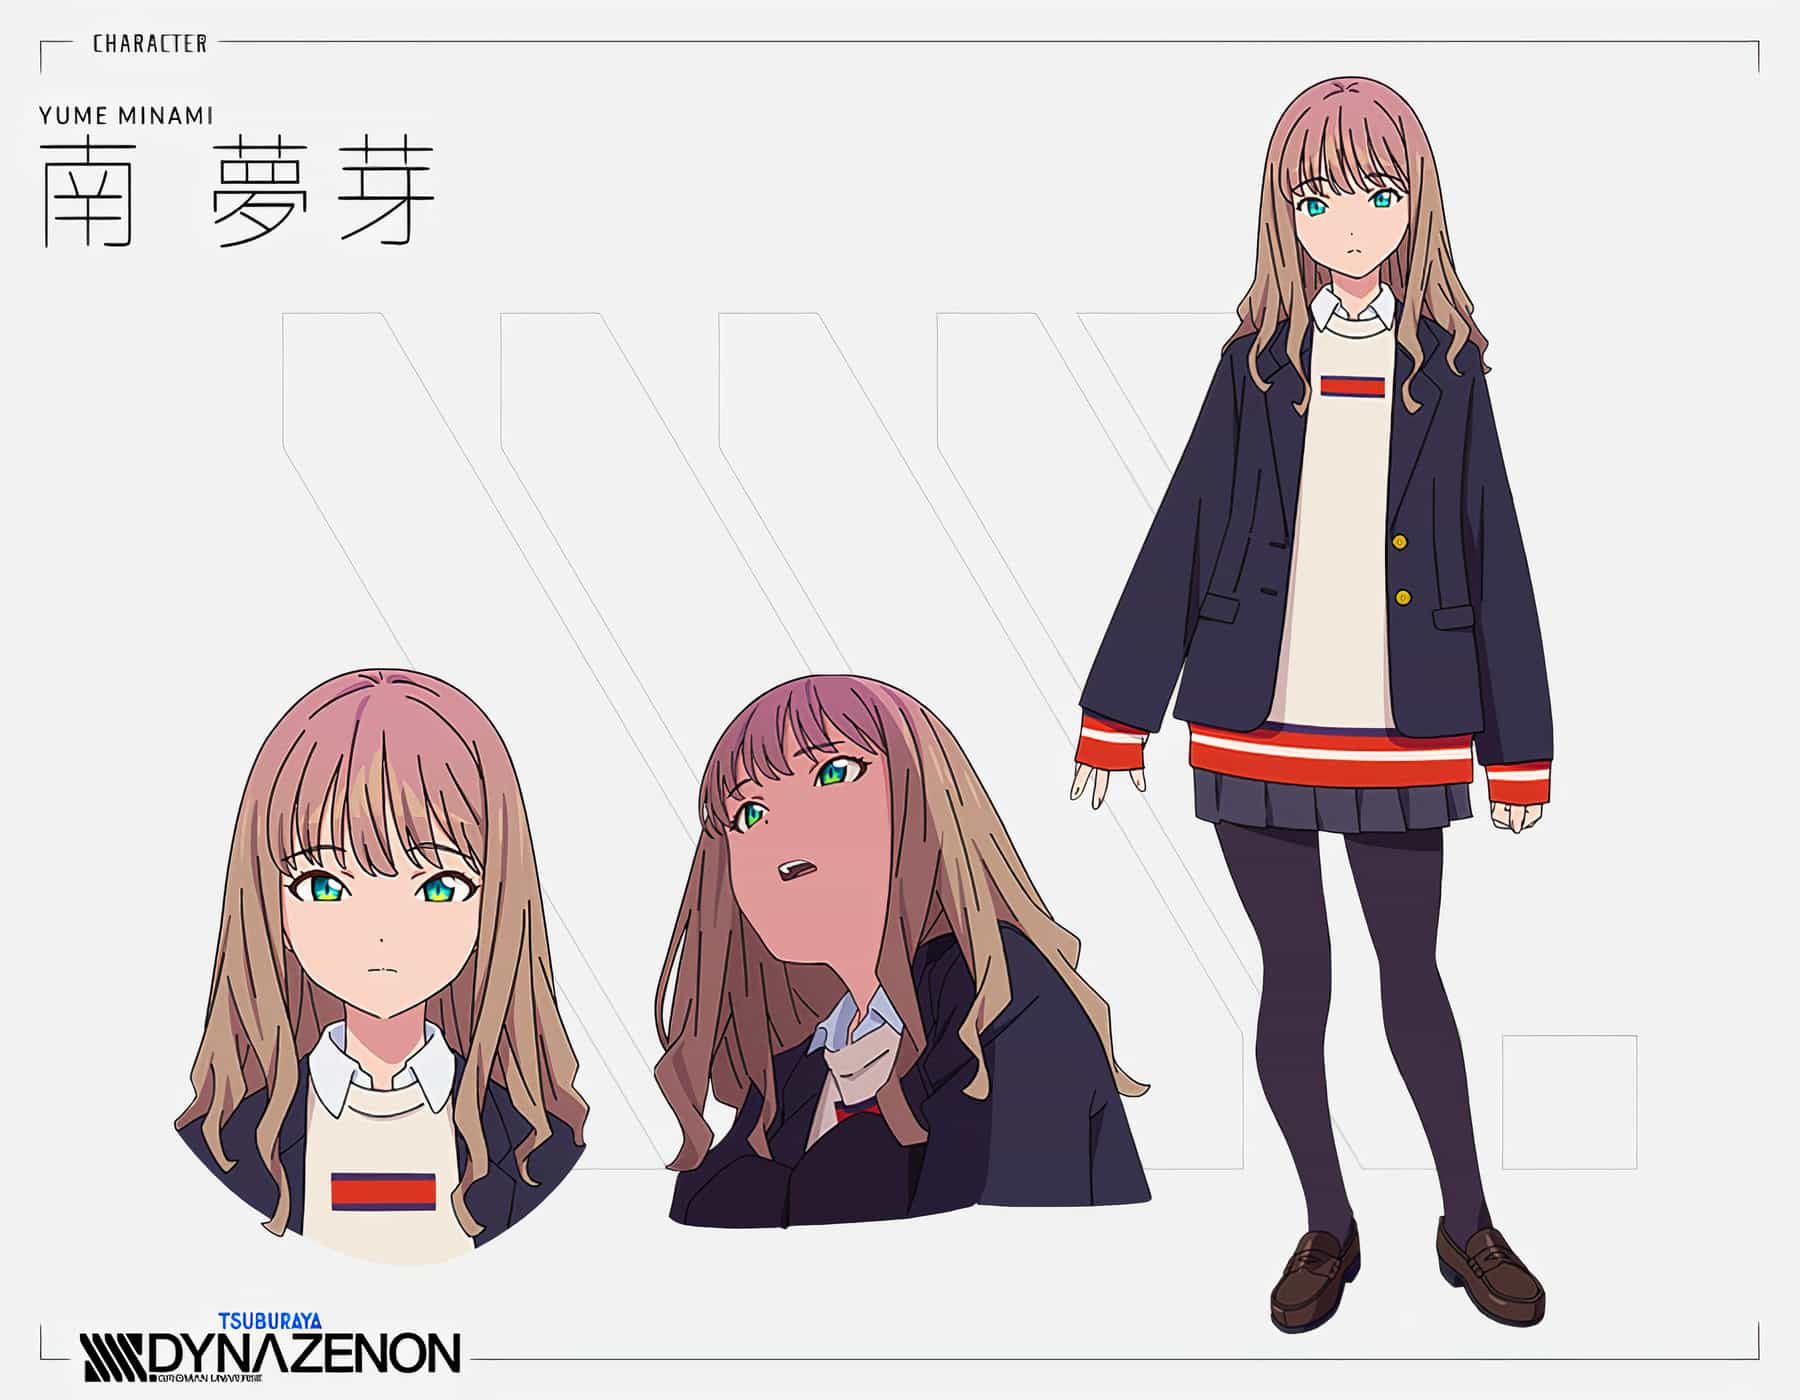 Chara Design de Yume Minami, l'un des personnages principaux de l'anime SSSS.DYNAZENON